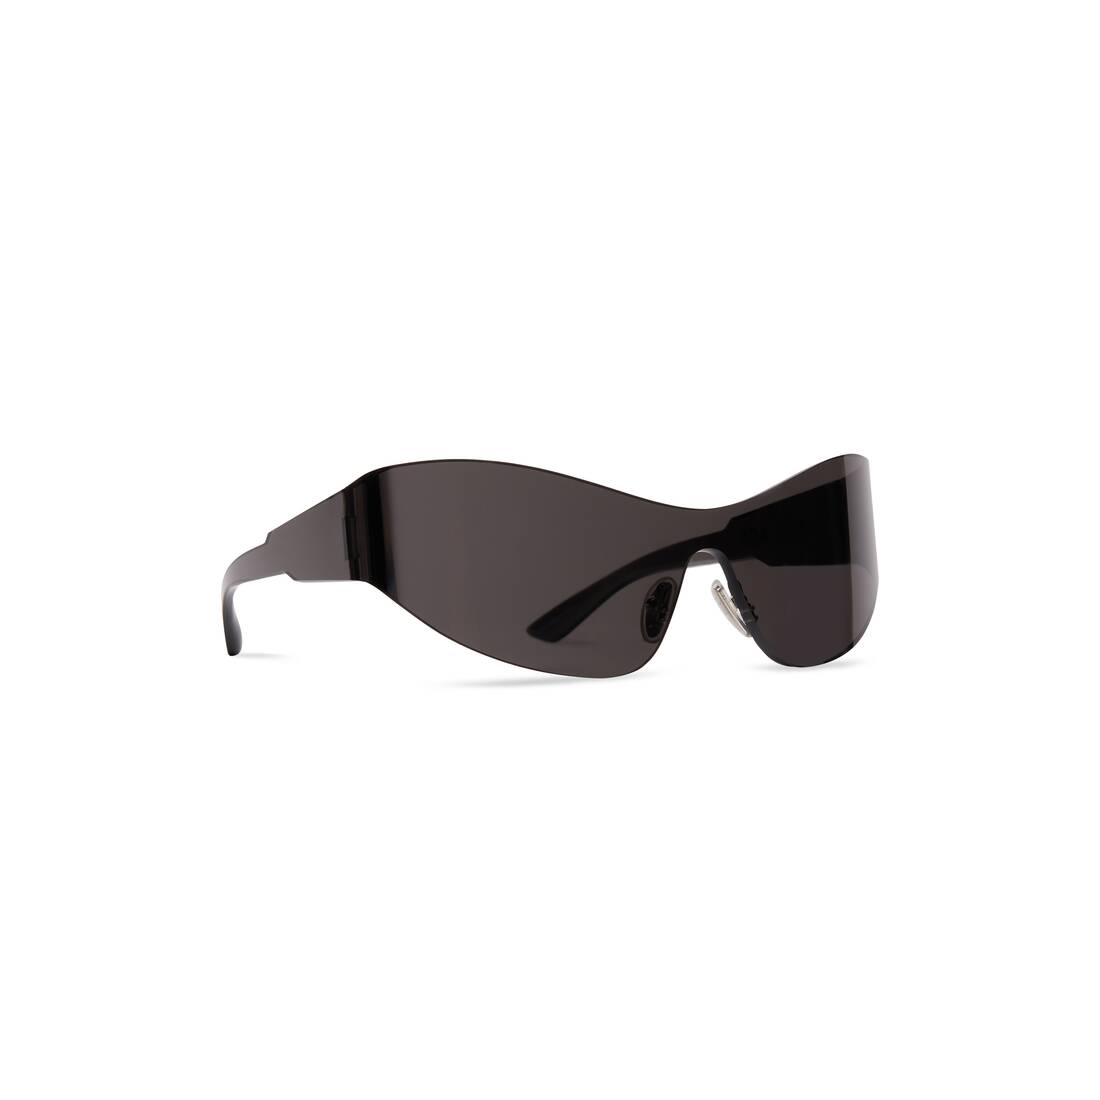 Mono Cat 2.0 Sunglasses in Black